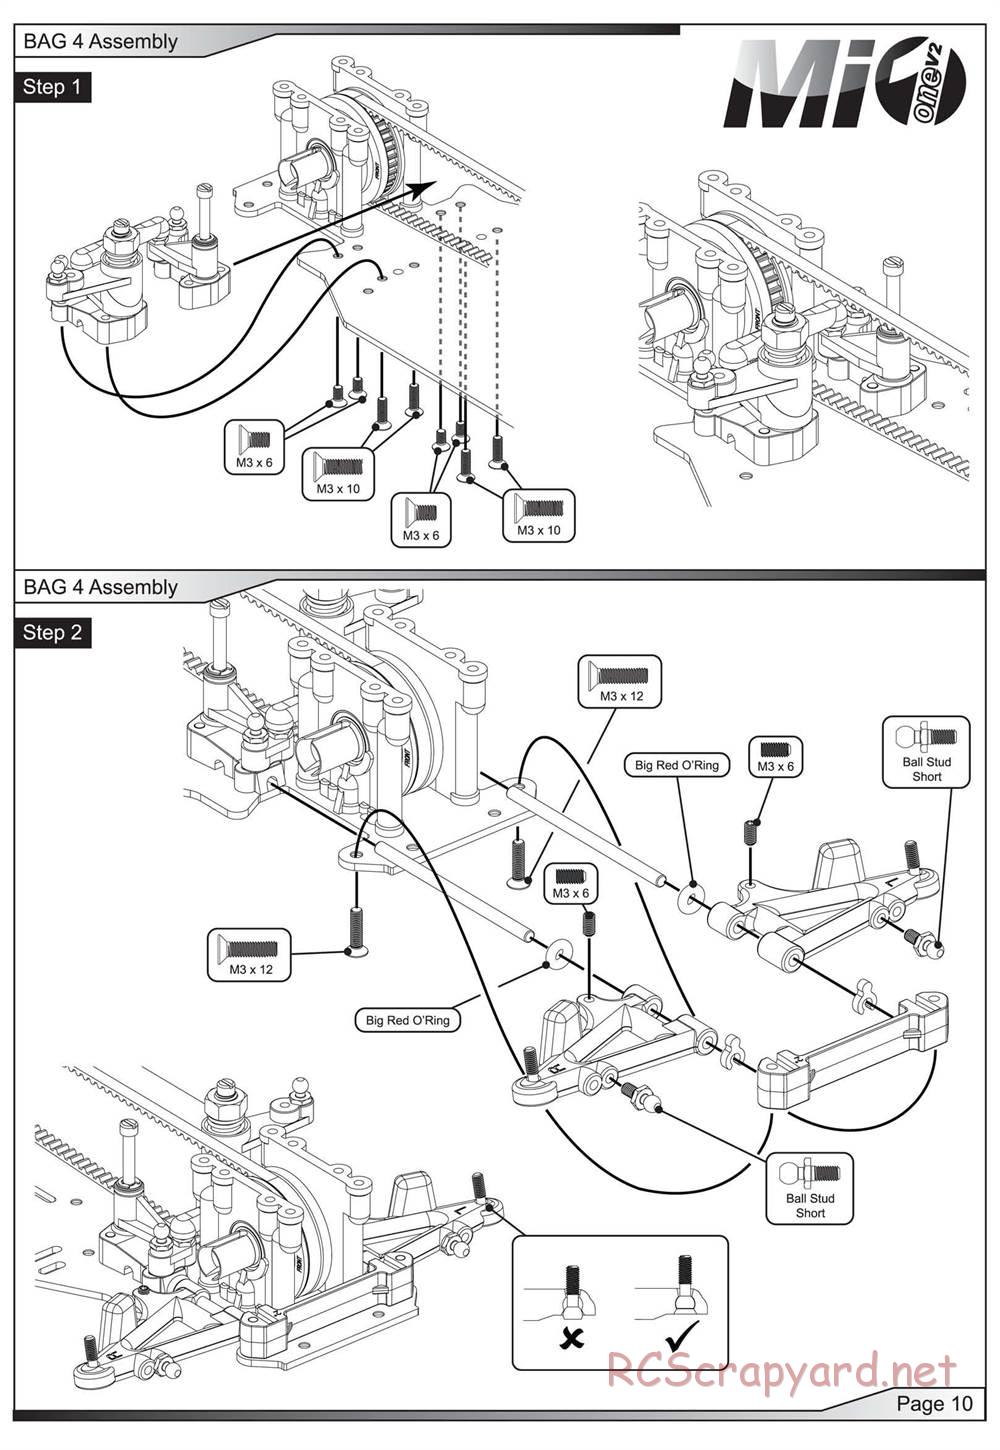 Schumacher - Mi1v2 - Manual - Page 11